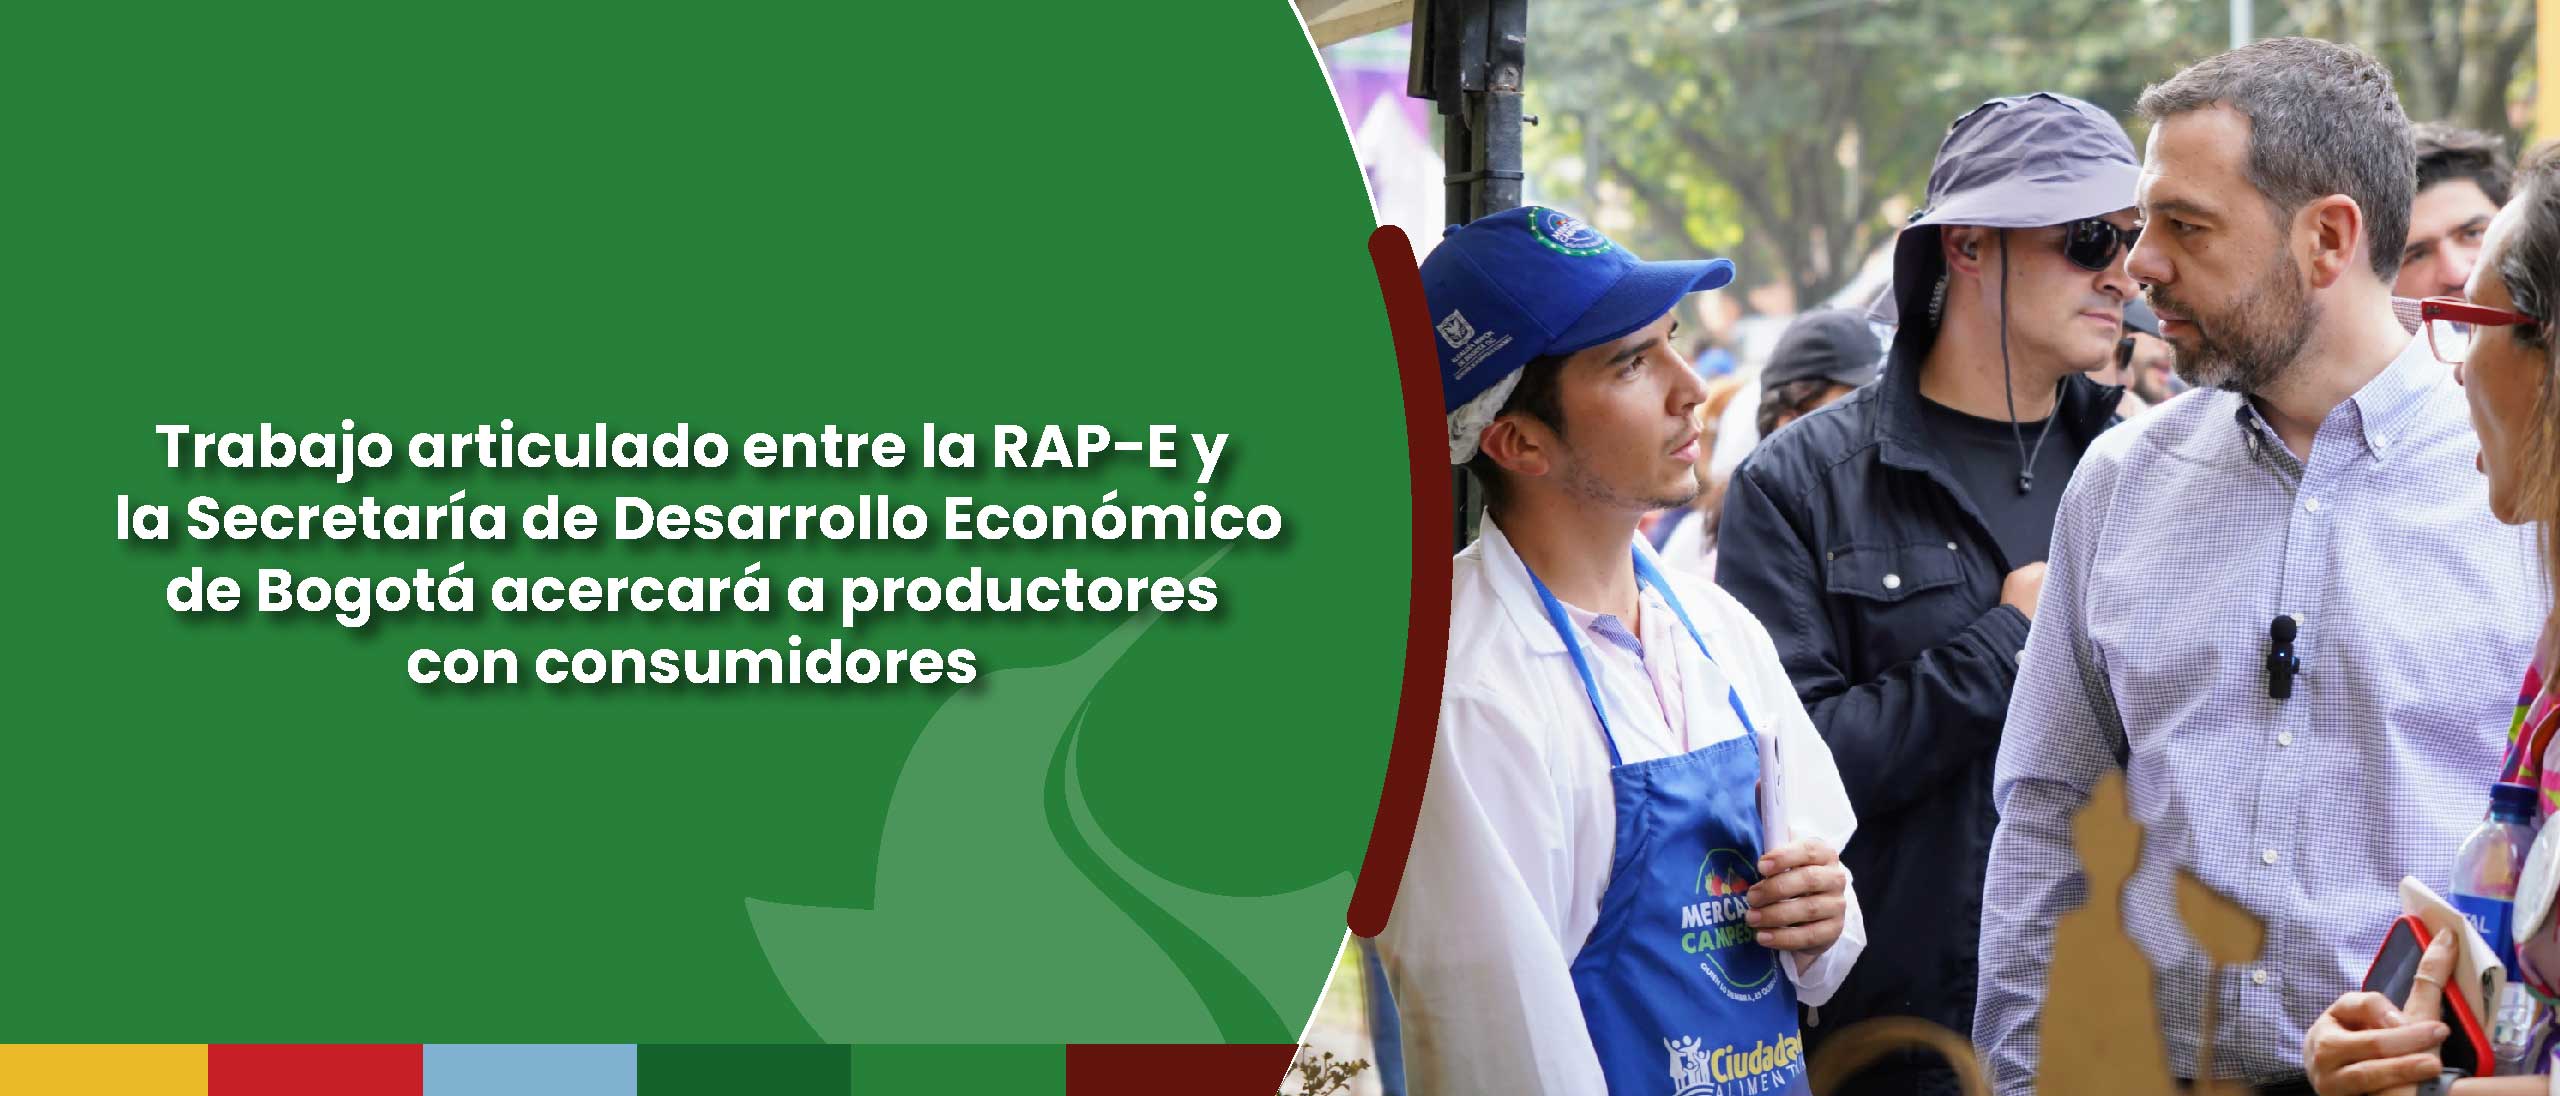 Trabajo articulado entre la RAP-E y la Secretaría de Desarrollo Económico de Bogotá acercará a productores con consumidores